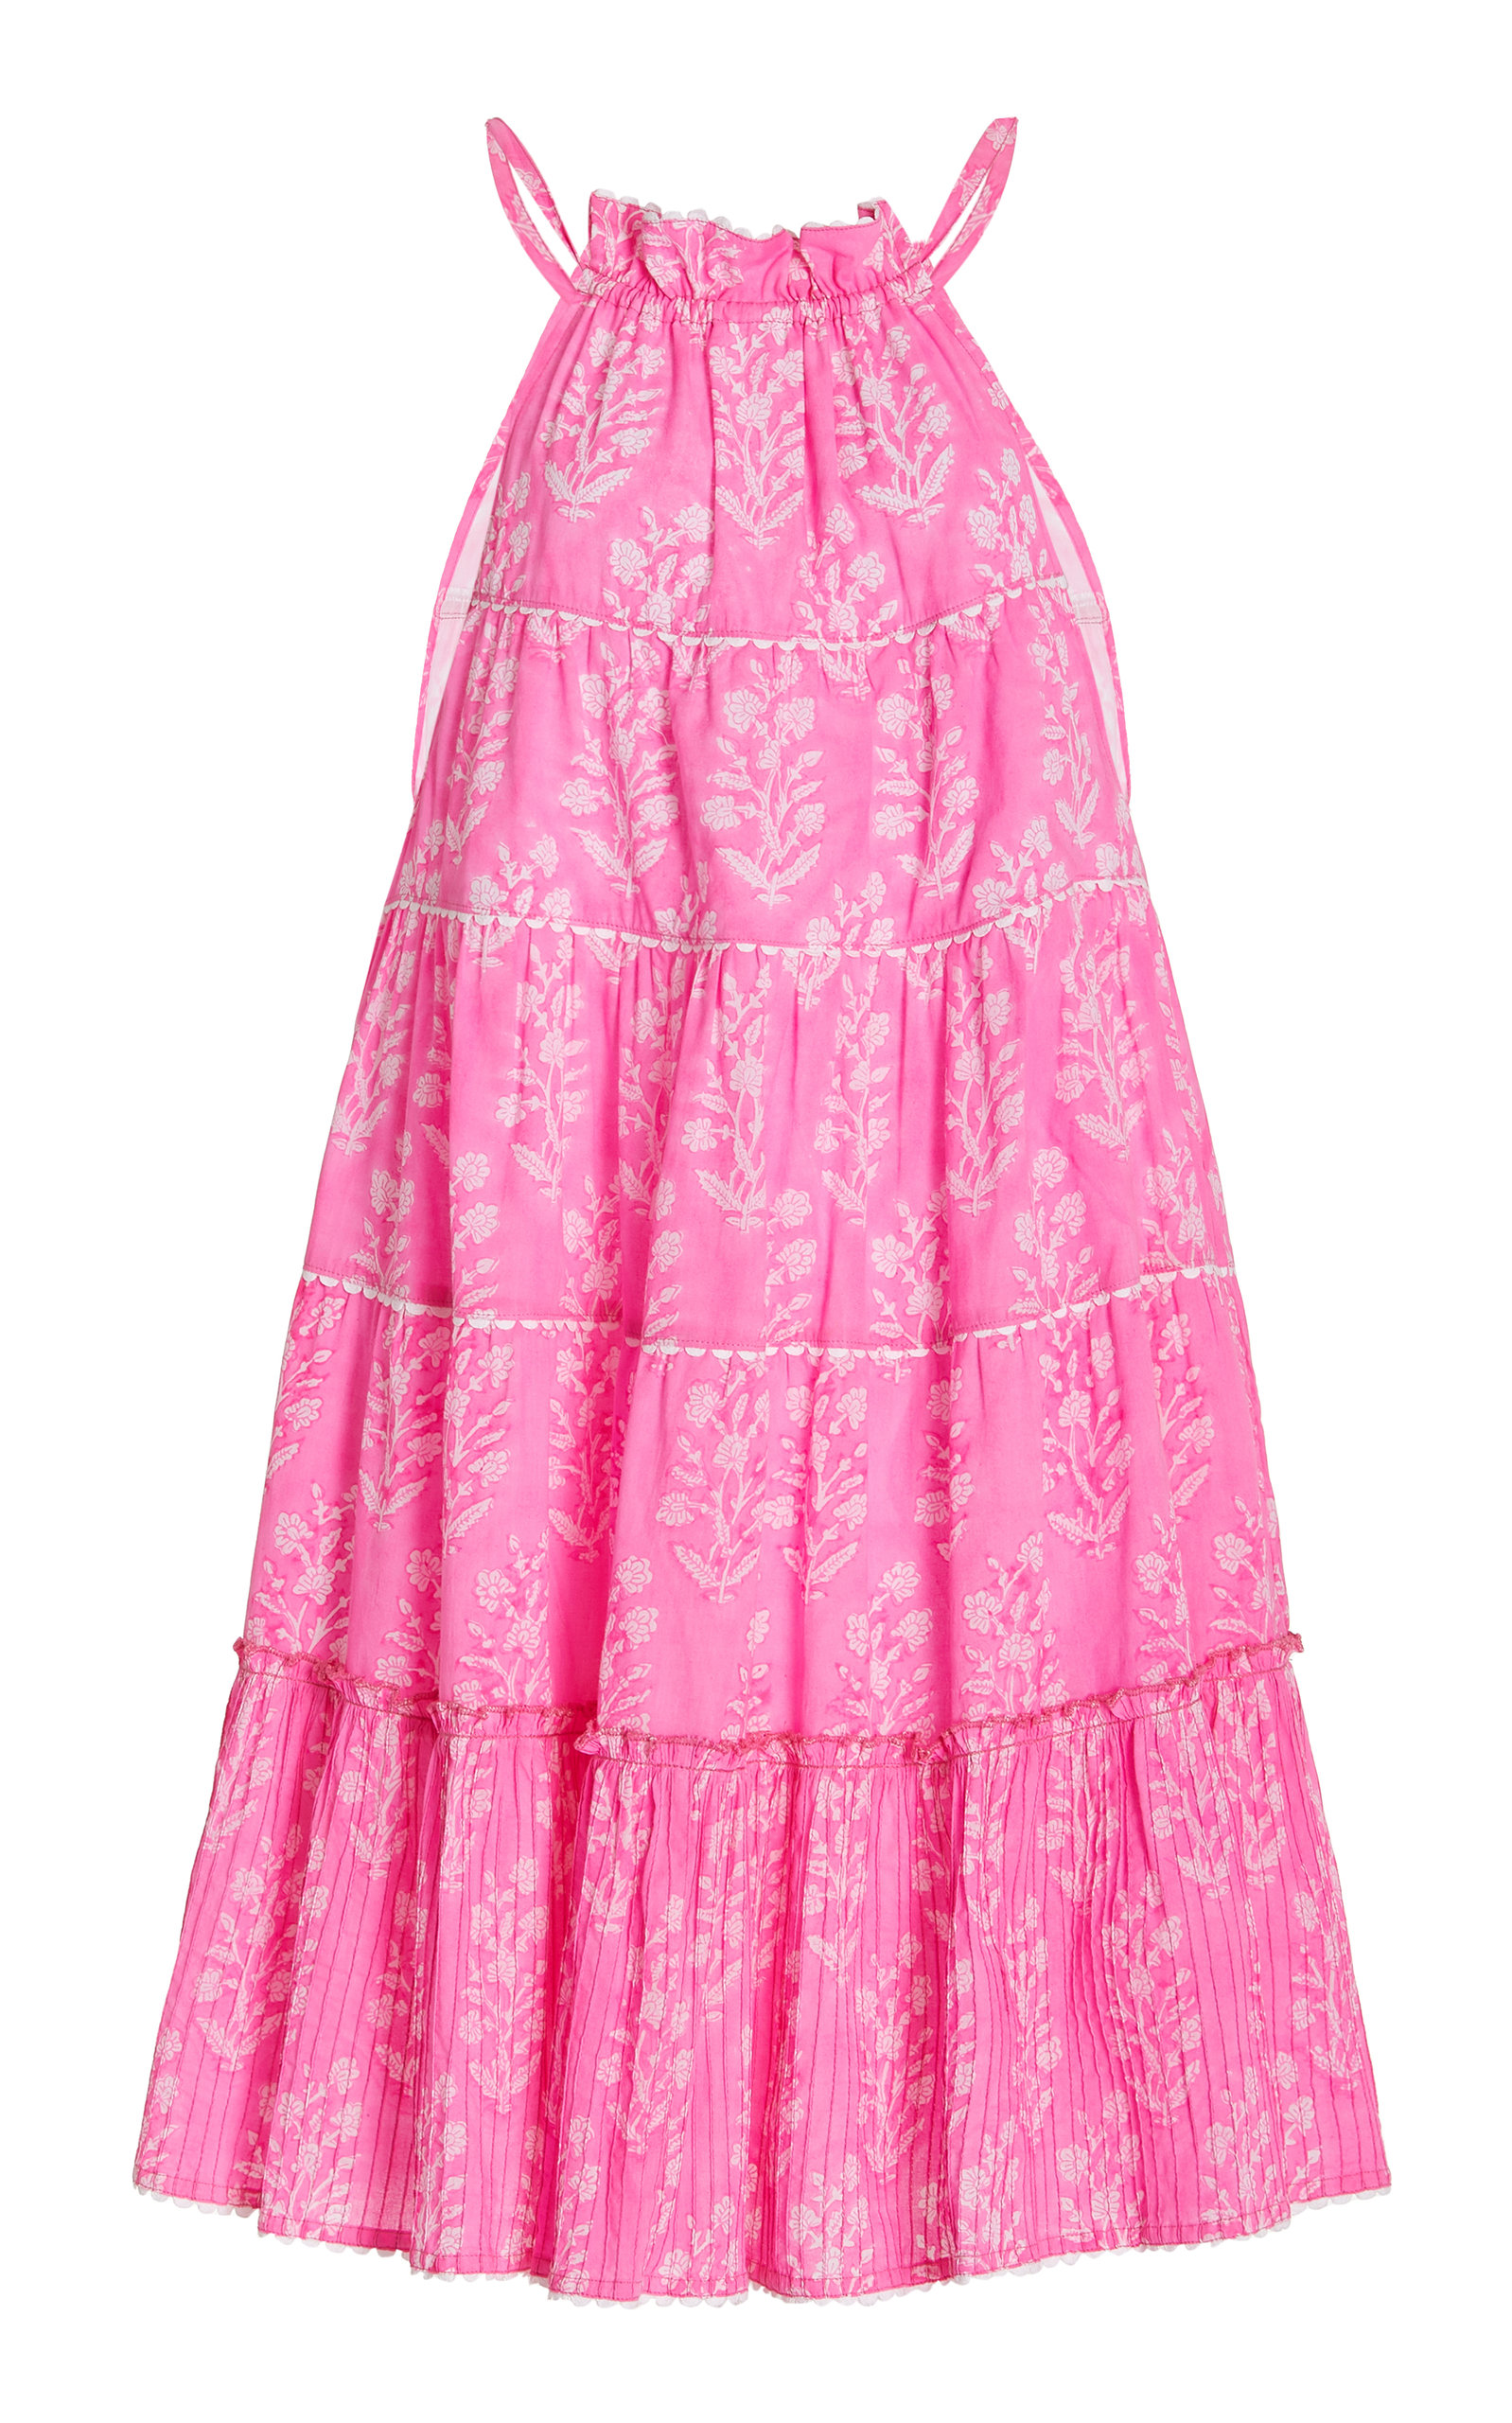 Juliet Dunn Women's Tiered Floral Cotton Mini Dress